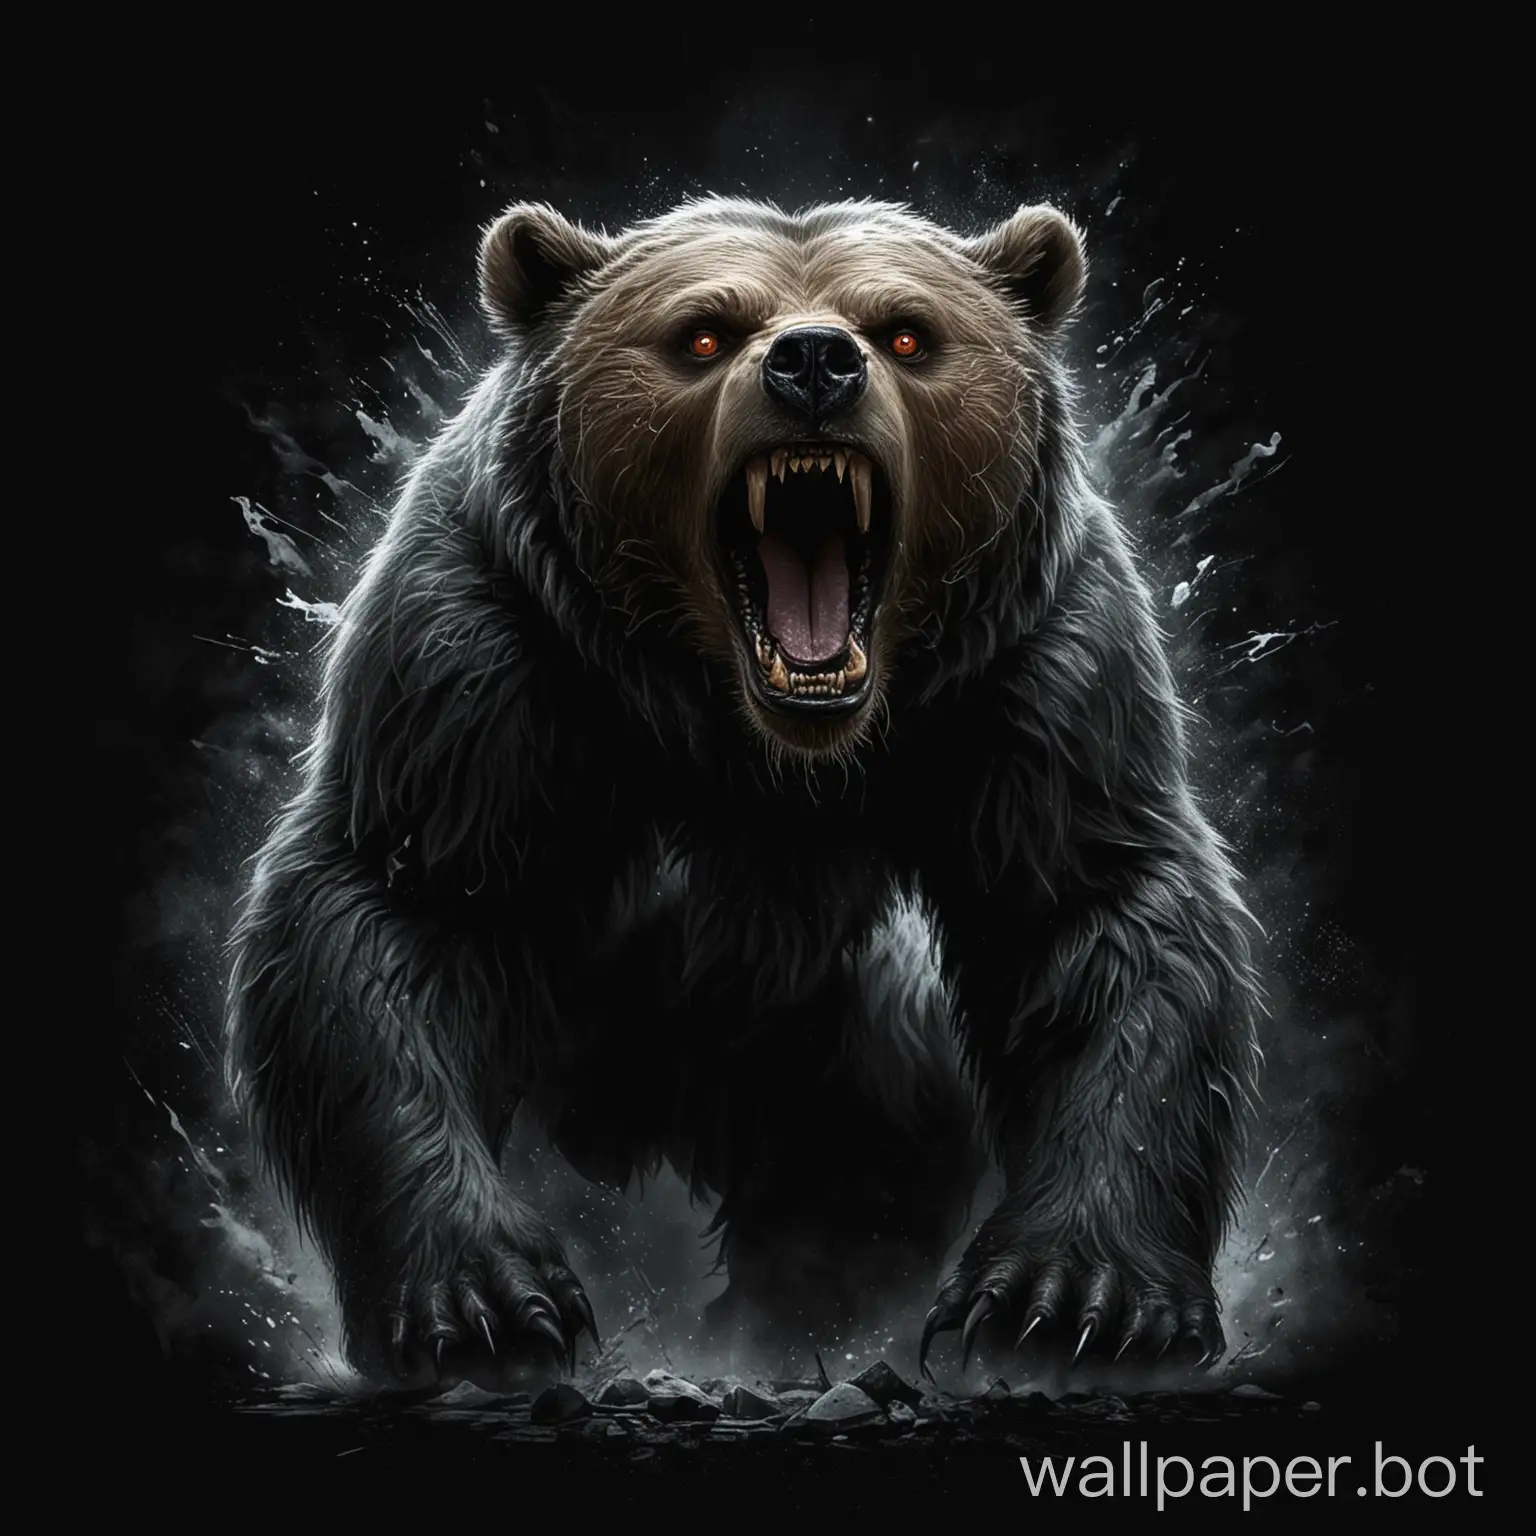 draw a fantasy enraged bear on a black background